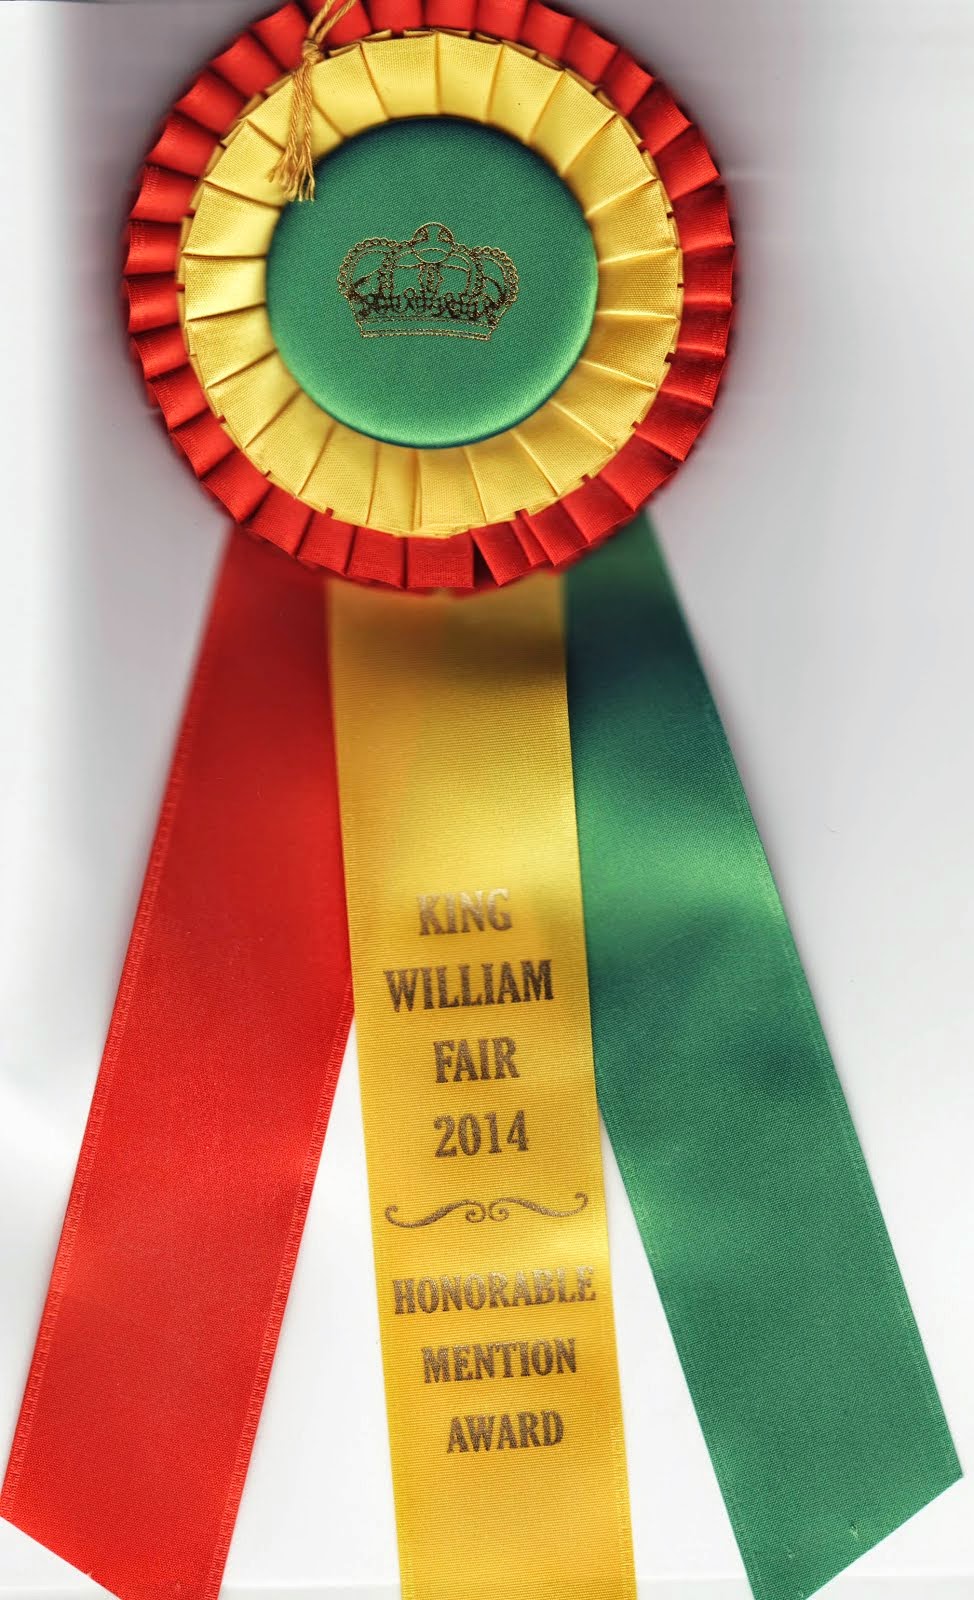 King Williams Fair 2014